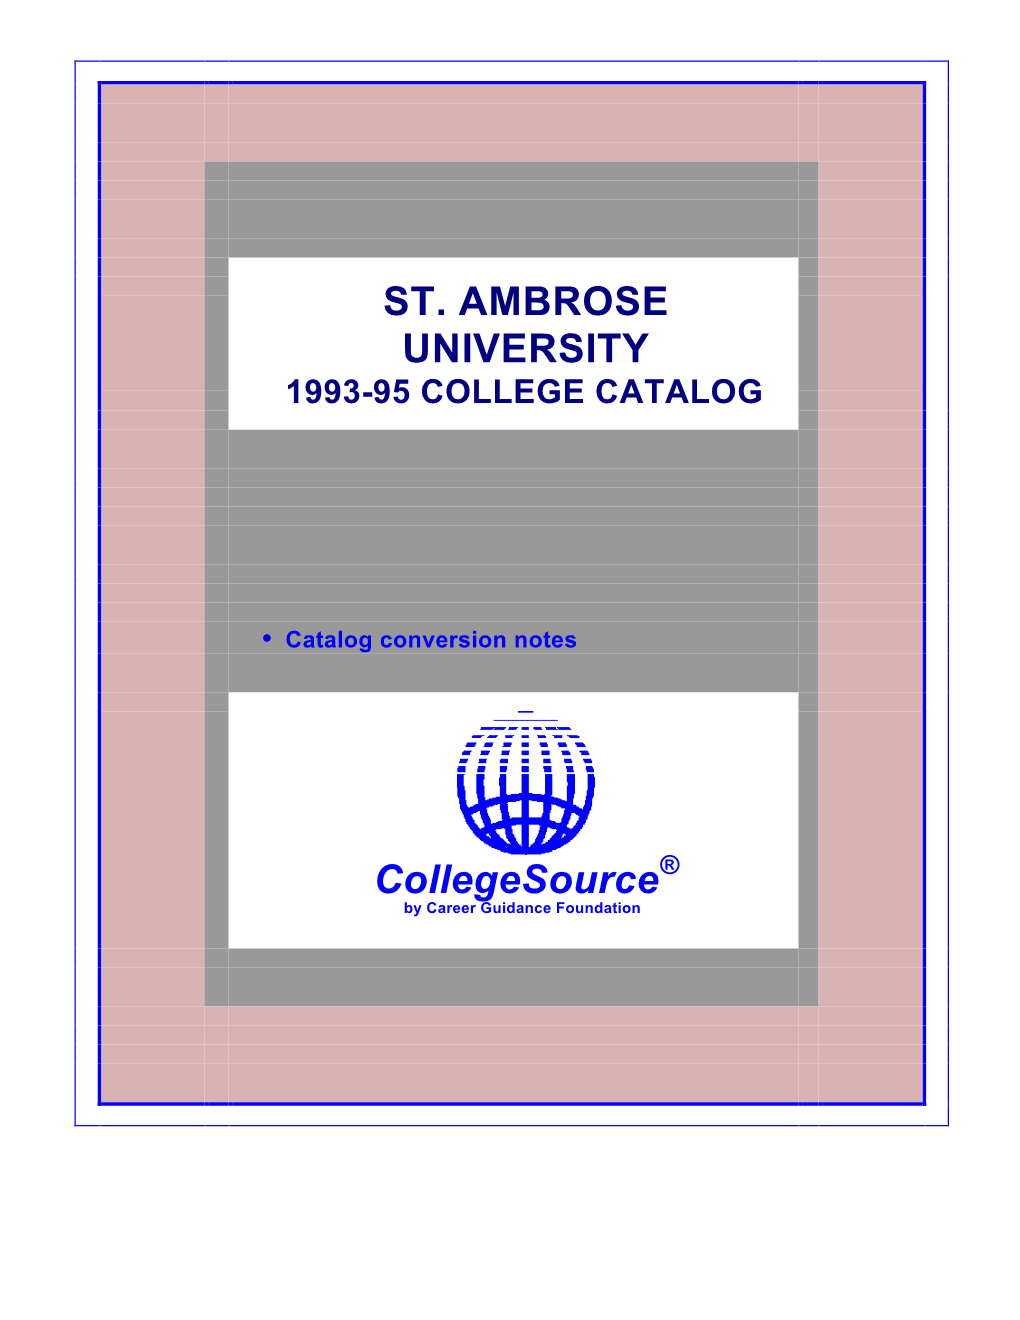 1993-95 College Catalog